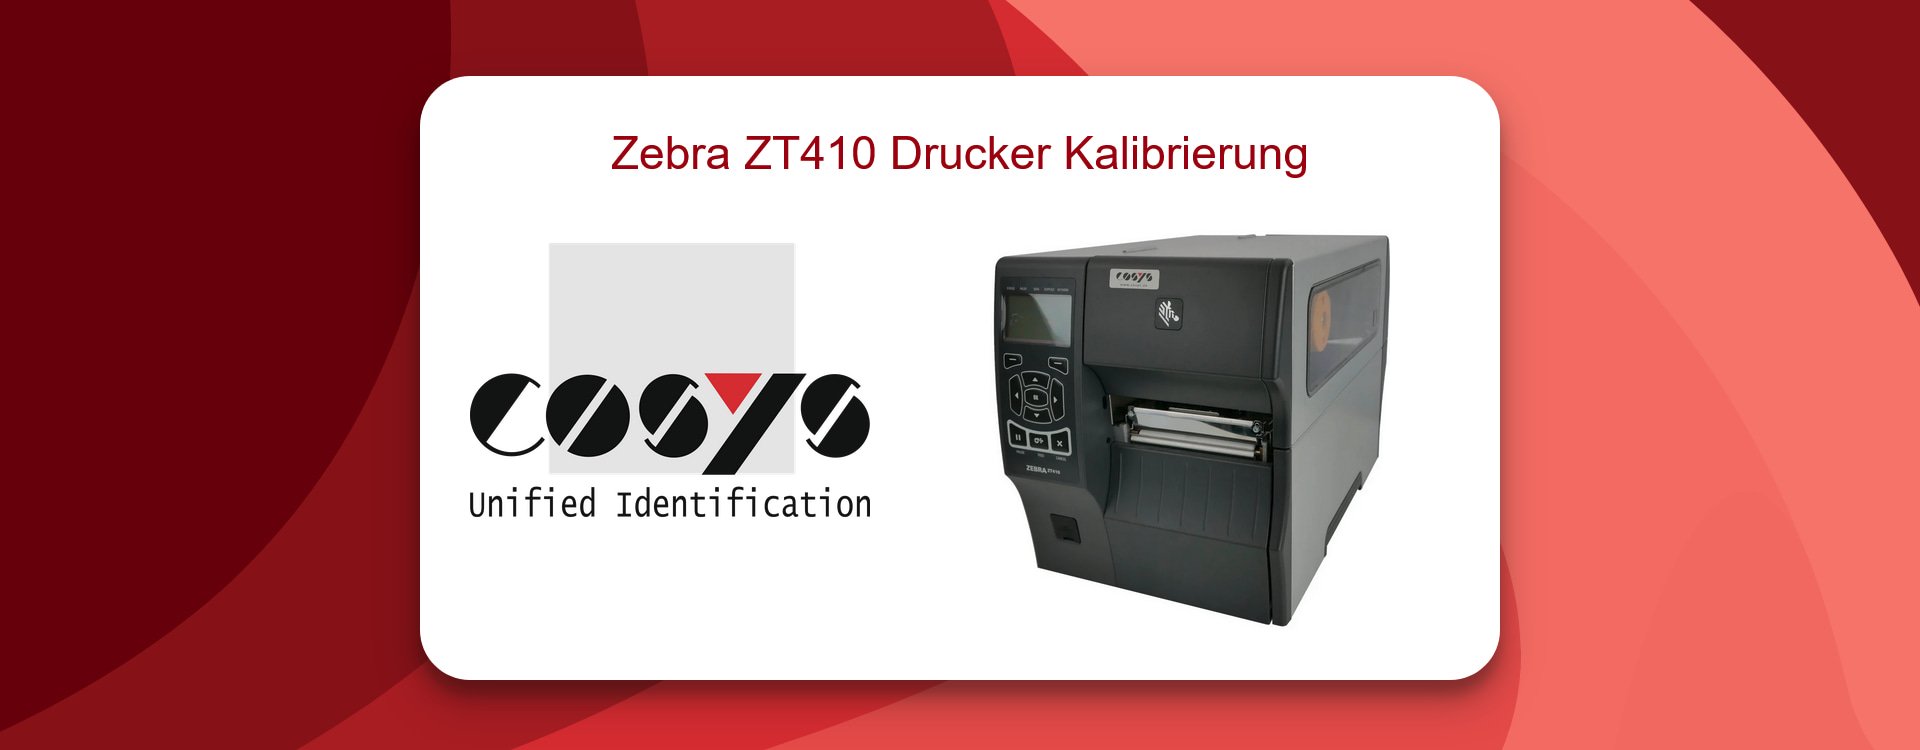 Optimale Zebra ZT410 Drucker Kalibrierung